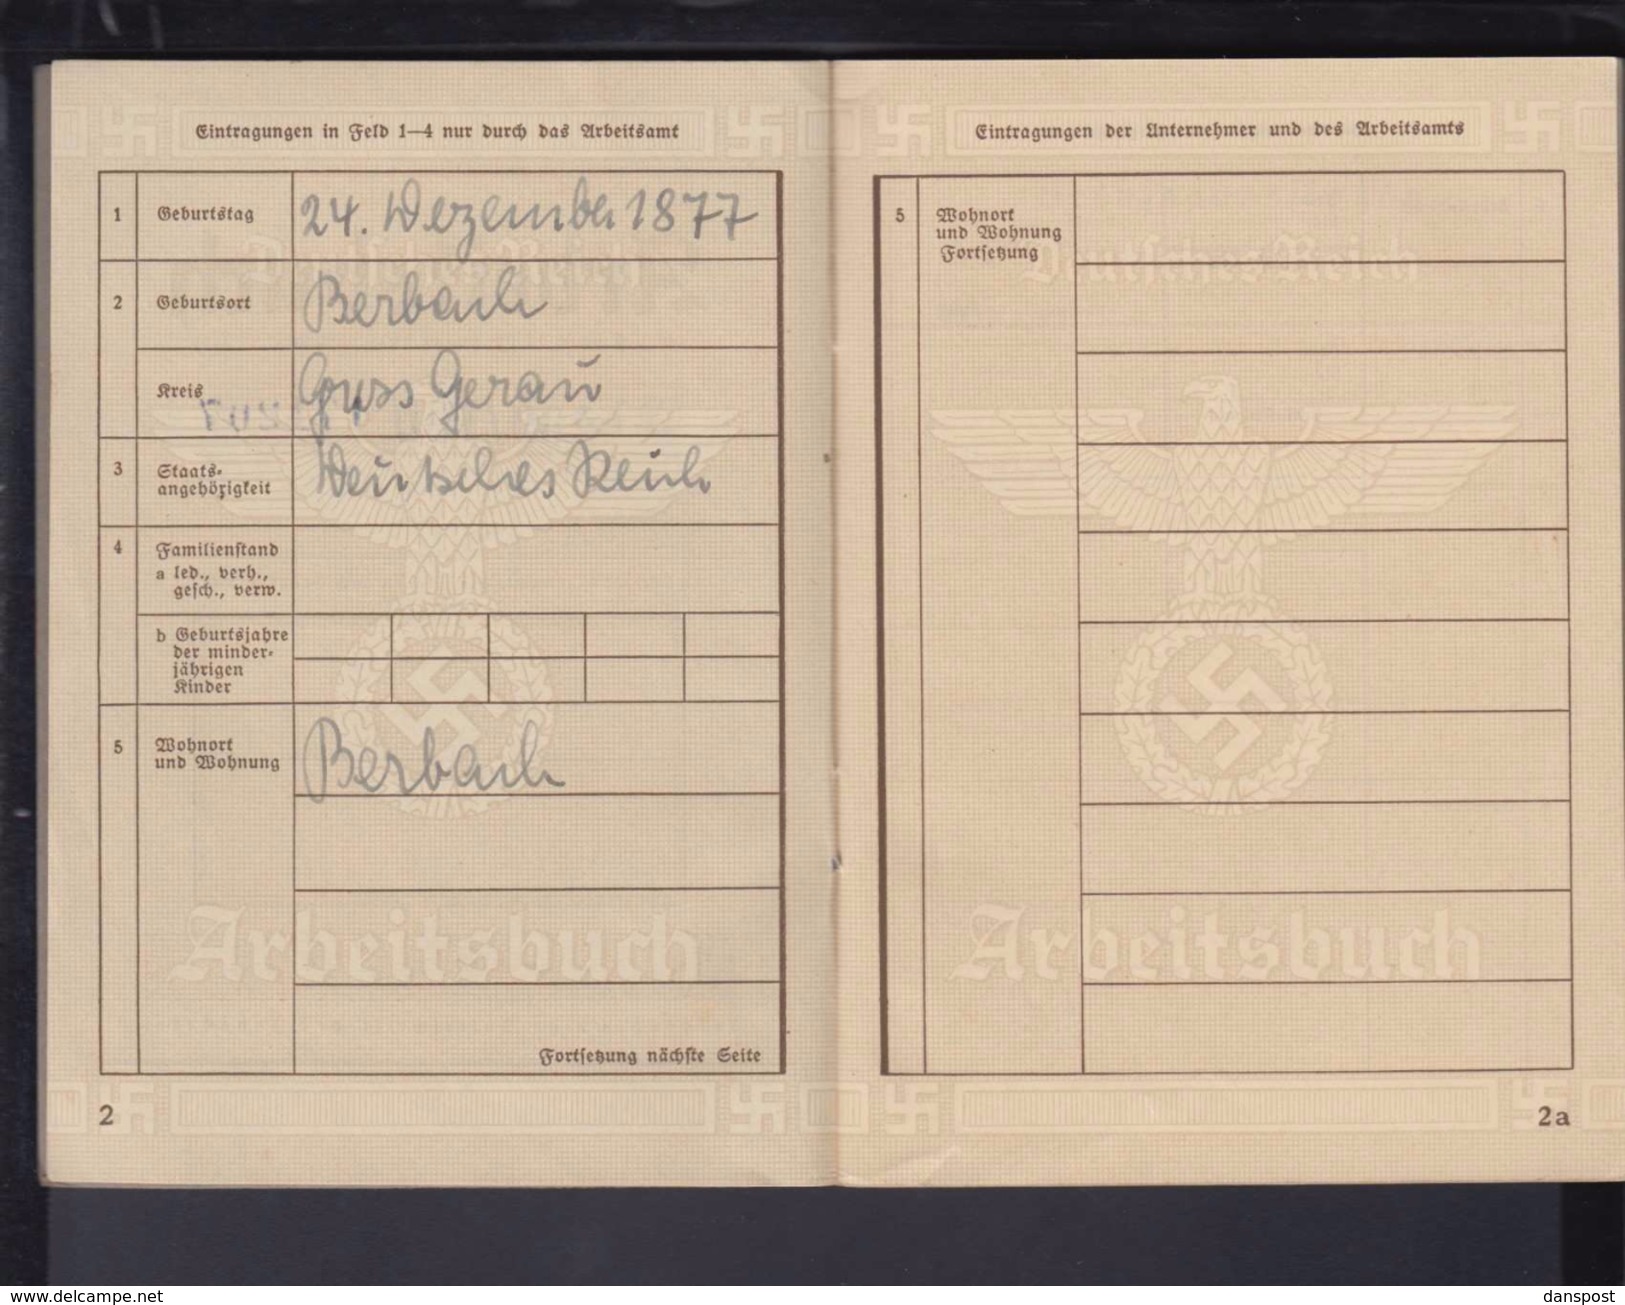 Deutsches Reich Arbeitsbuch Arbeitsamt Mainz Nebenstelle Rüsselsheim 12.2.1943 Super Zustand! - Historische Dokumente